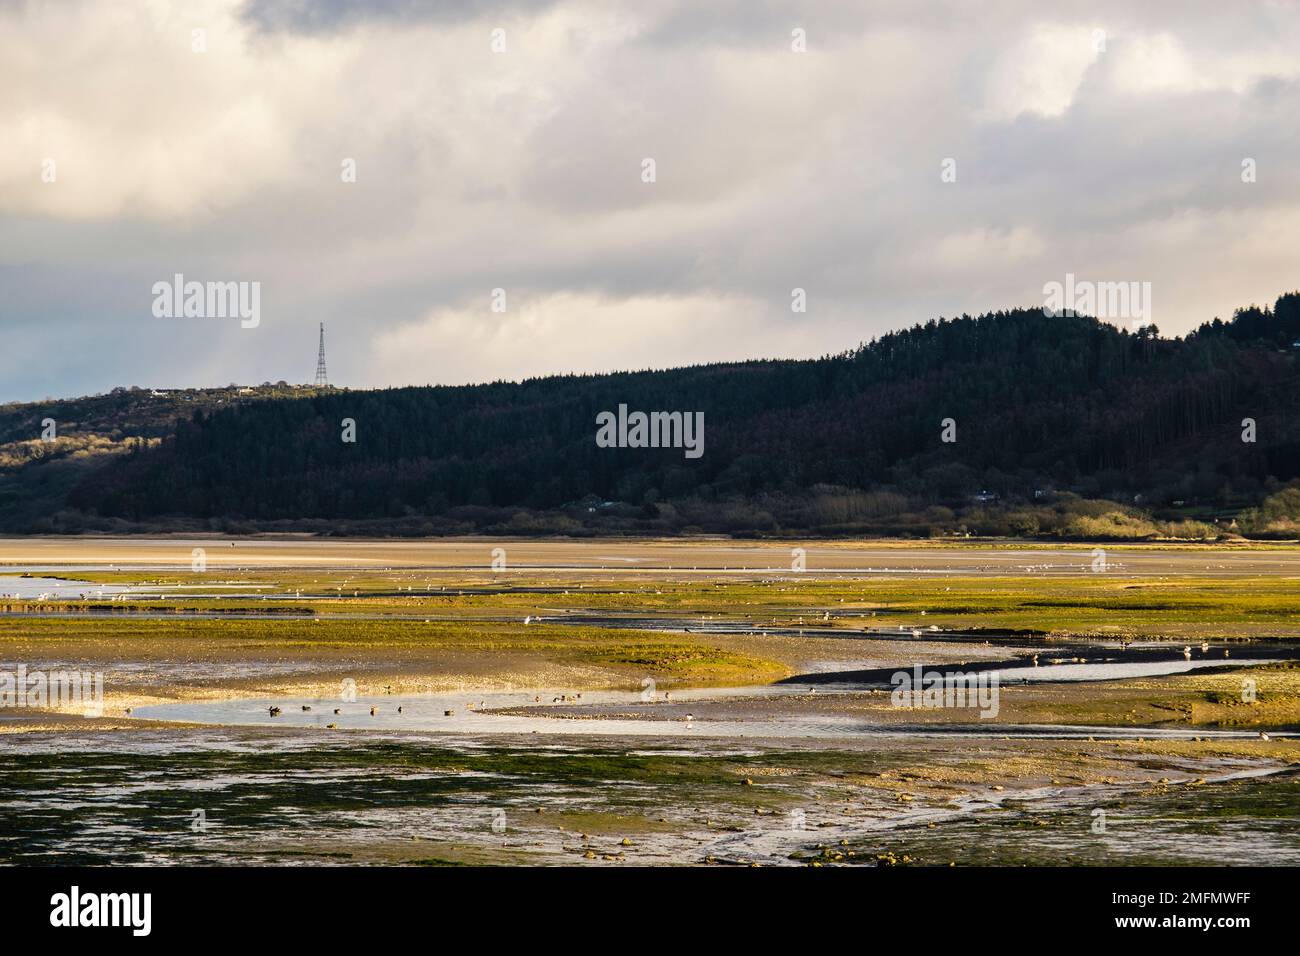 Les canards et les oiseaux à gué se nourrissent dans le marais saltmarsh marécageux à mesure que la marée arrive dans la baie de Red Wharf (Traeth Coch), Benllech, île d'Anglesey (Ynys mon), au pays de Galles, au Royaume-Uni Banque D'Images